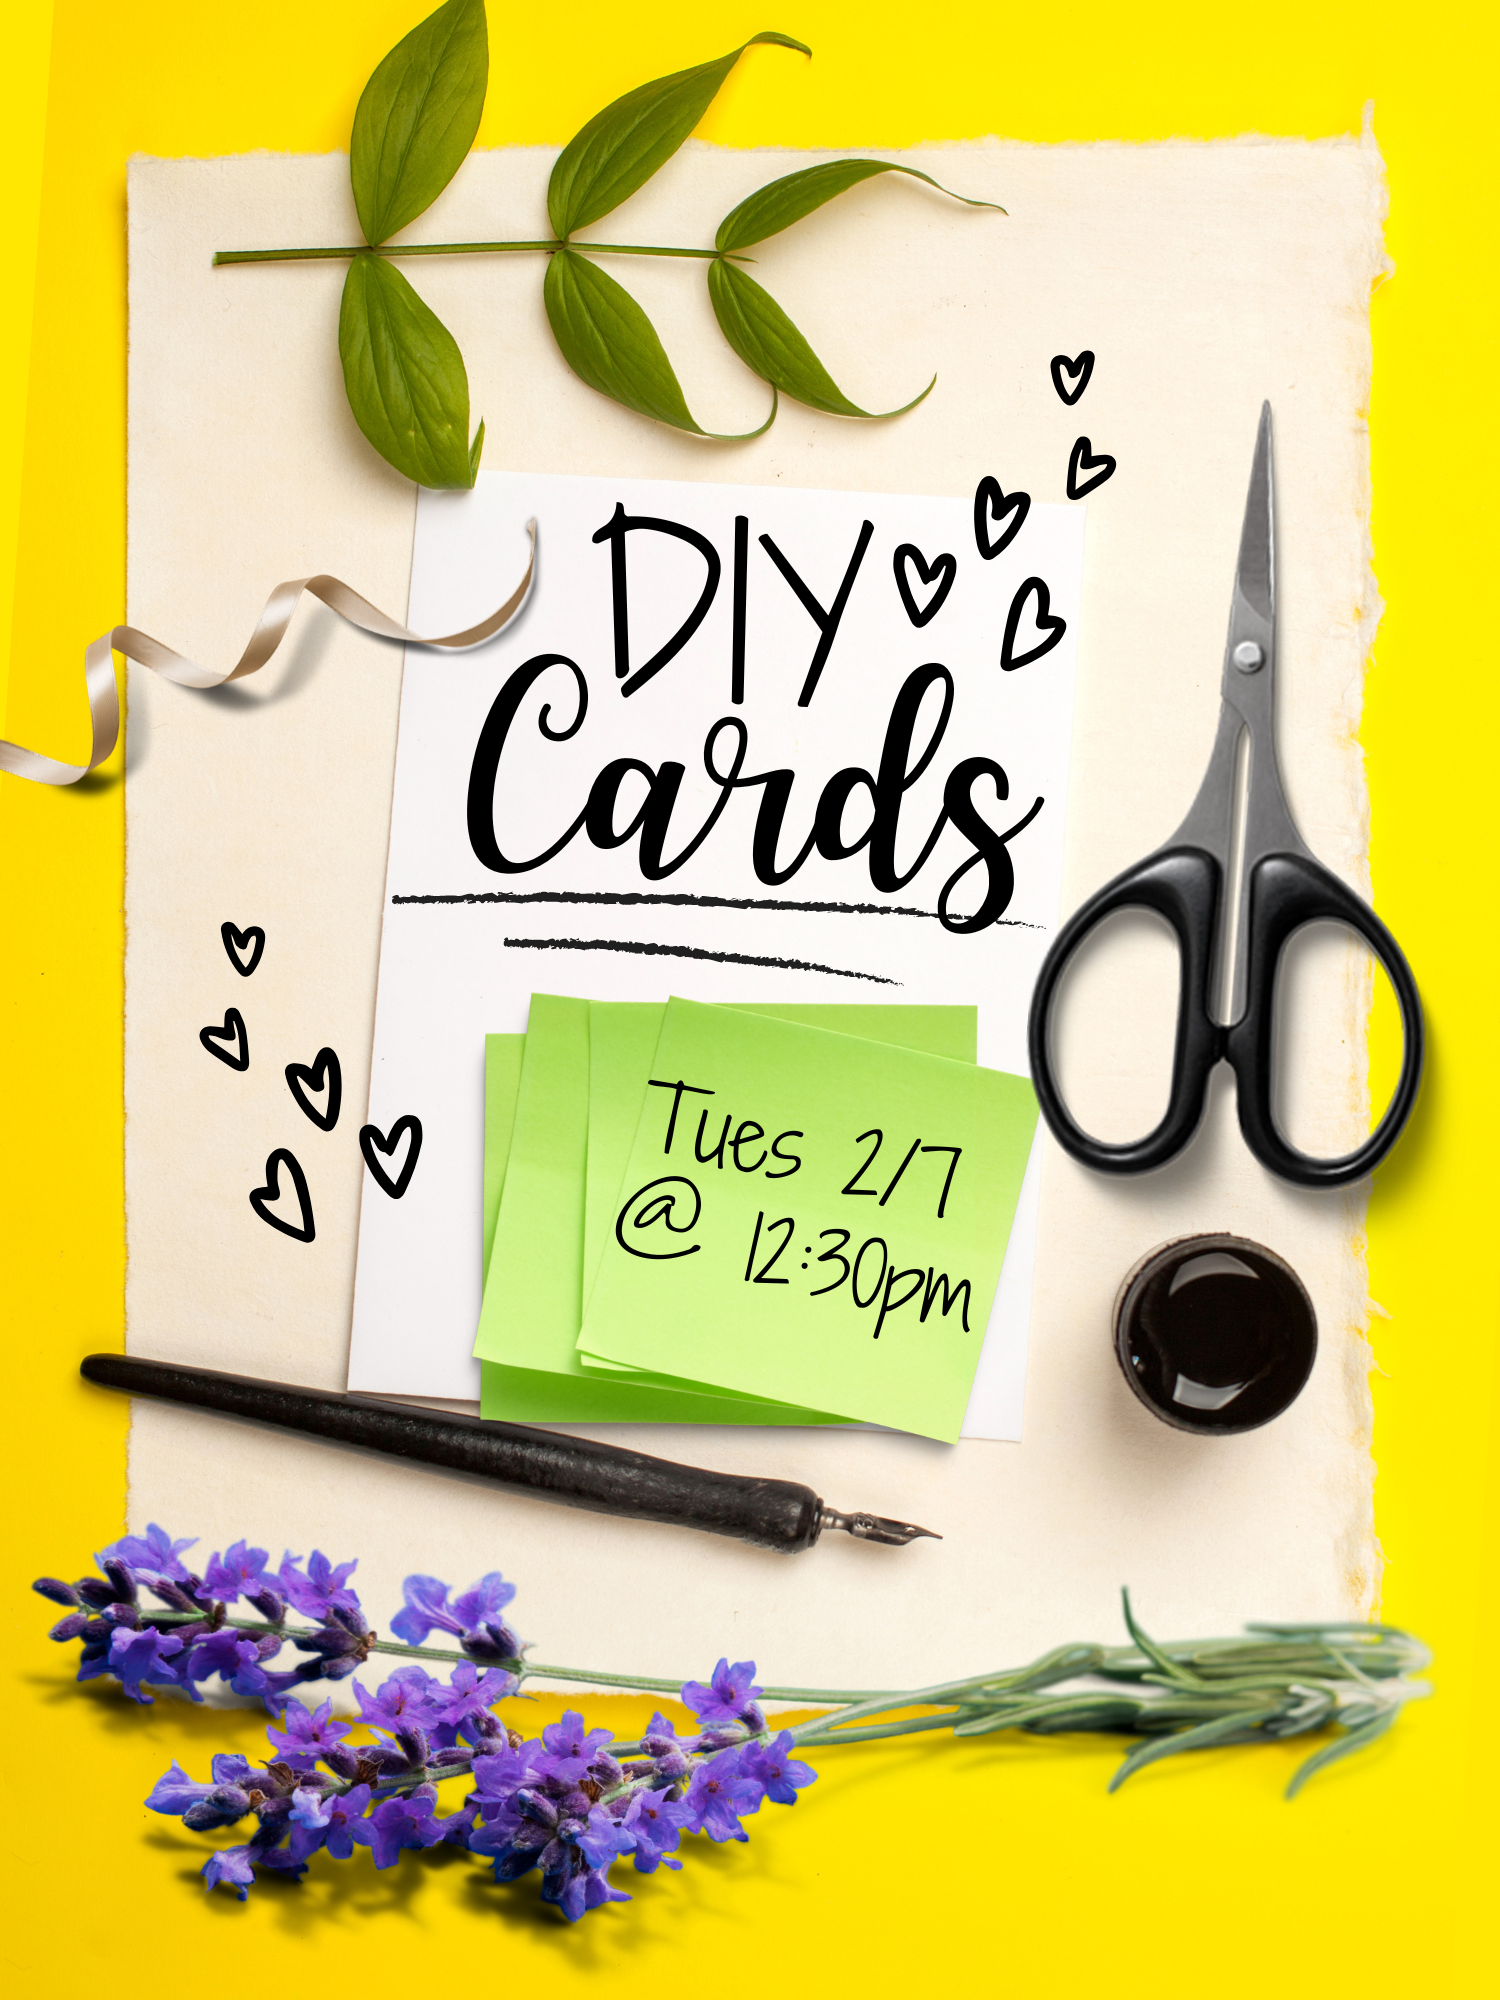 DIY Cards